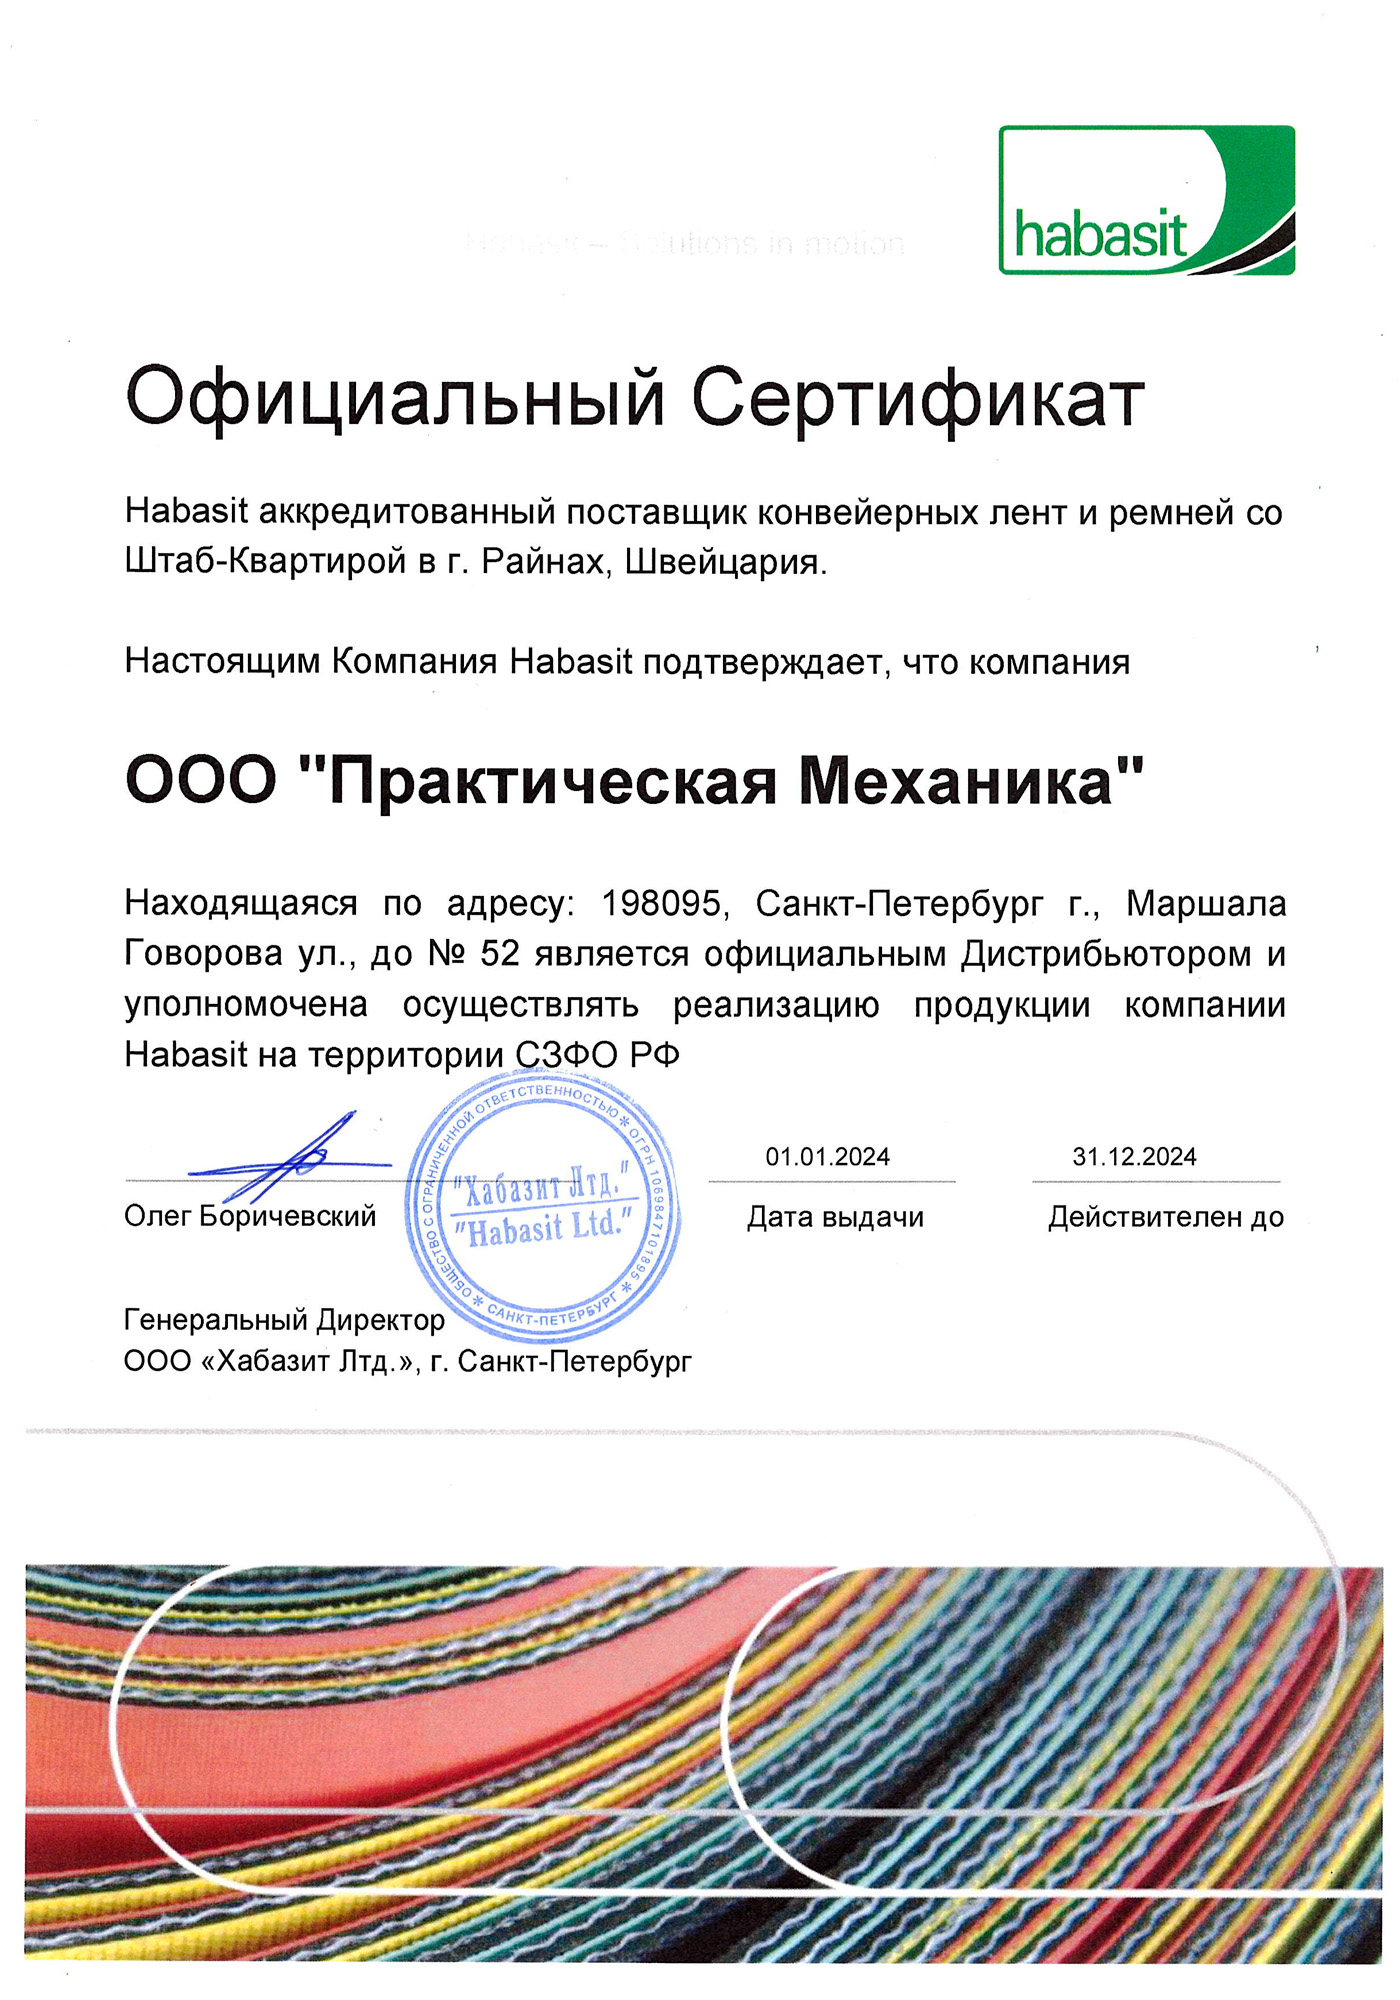 Сертификат Habasit